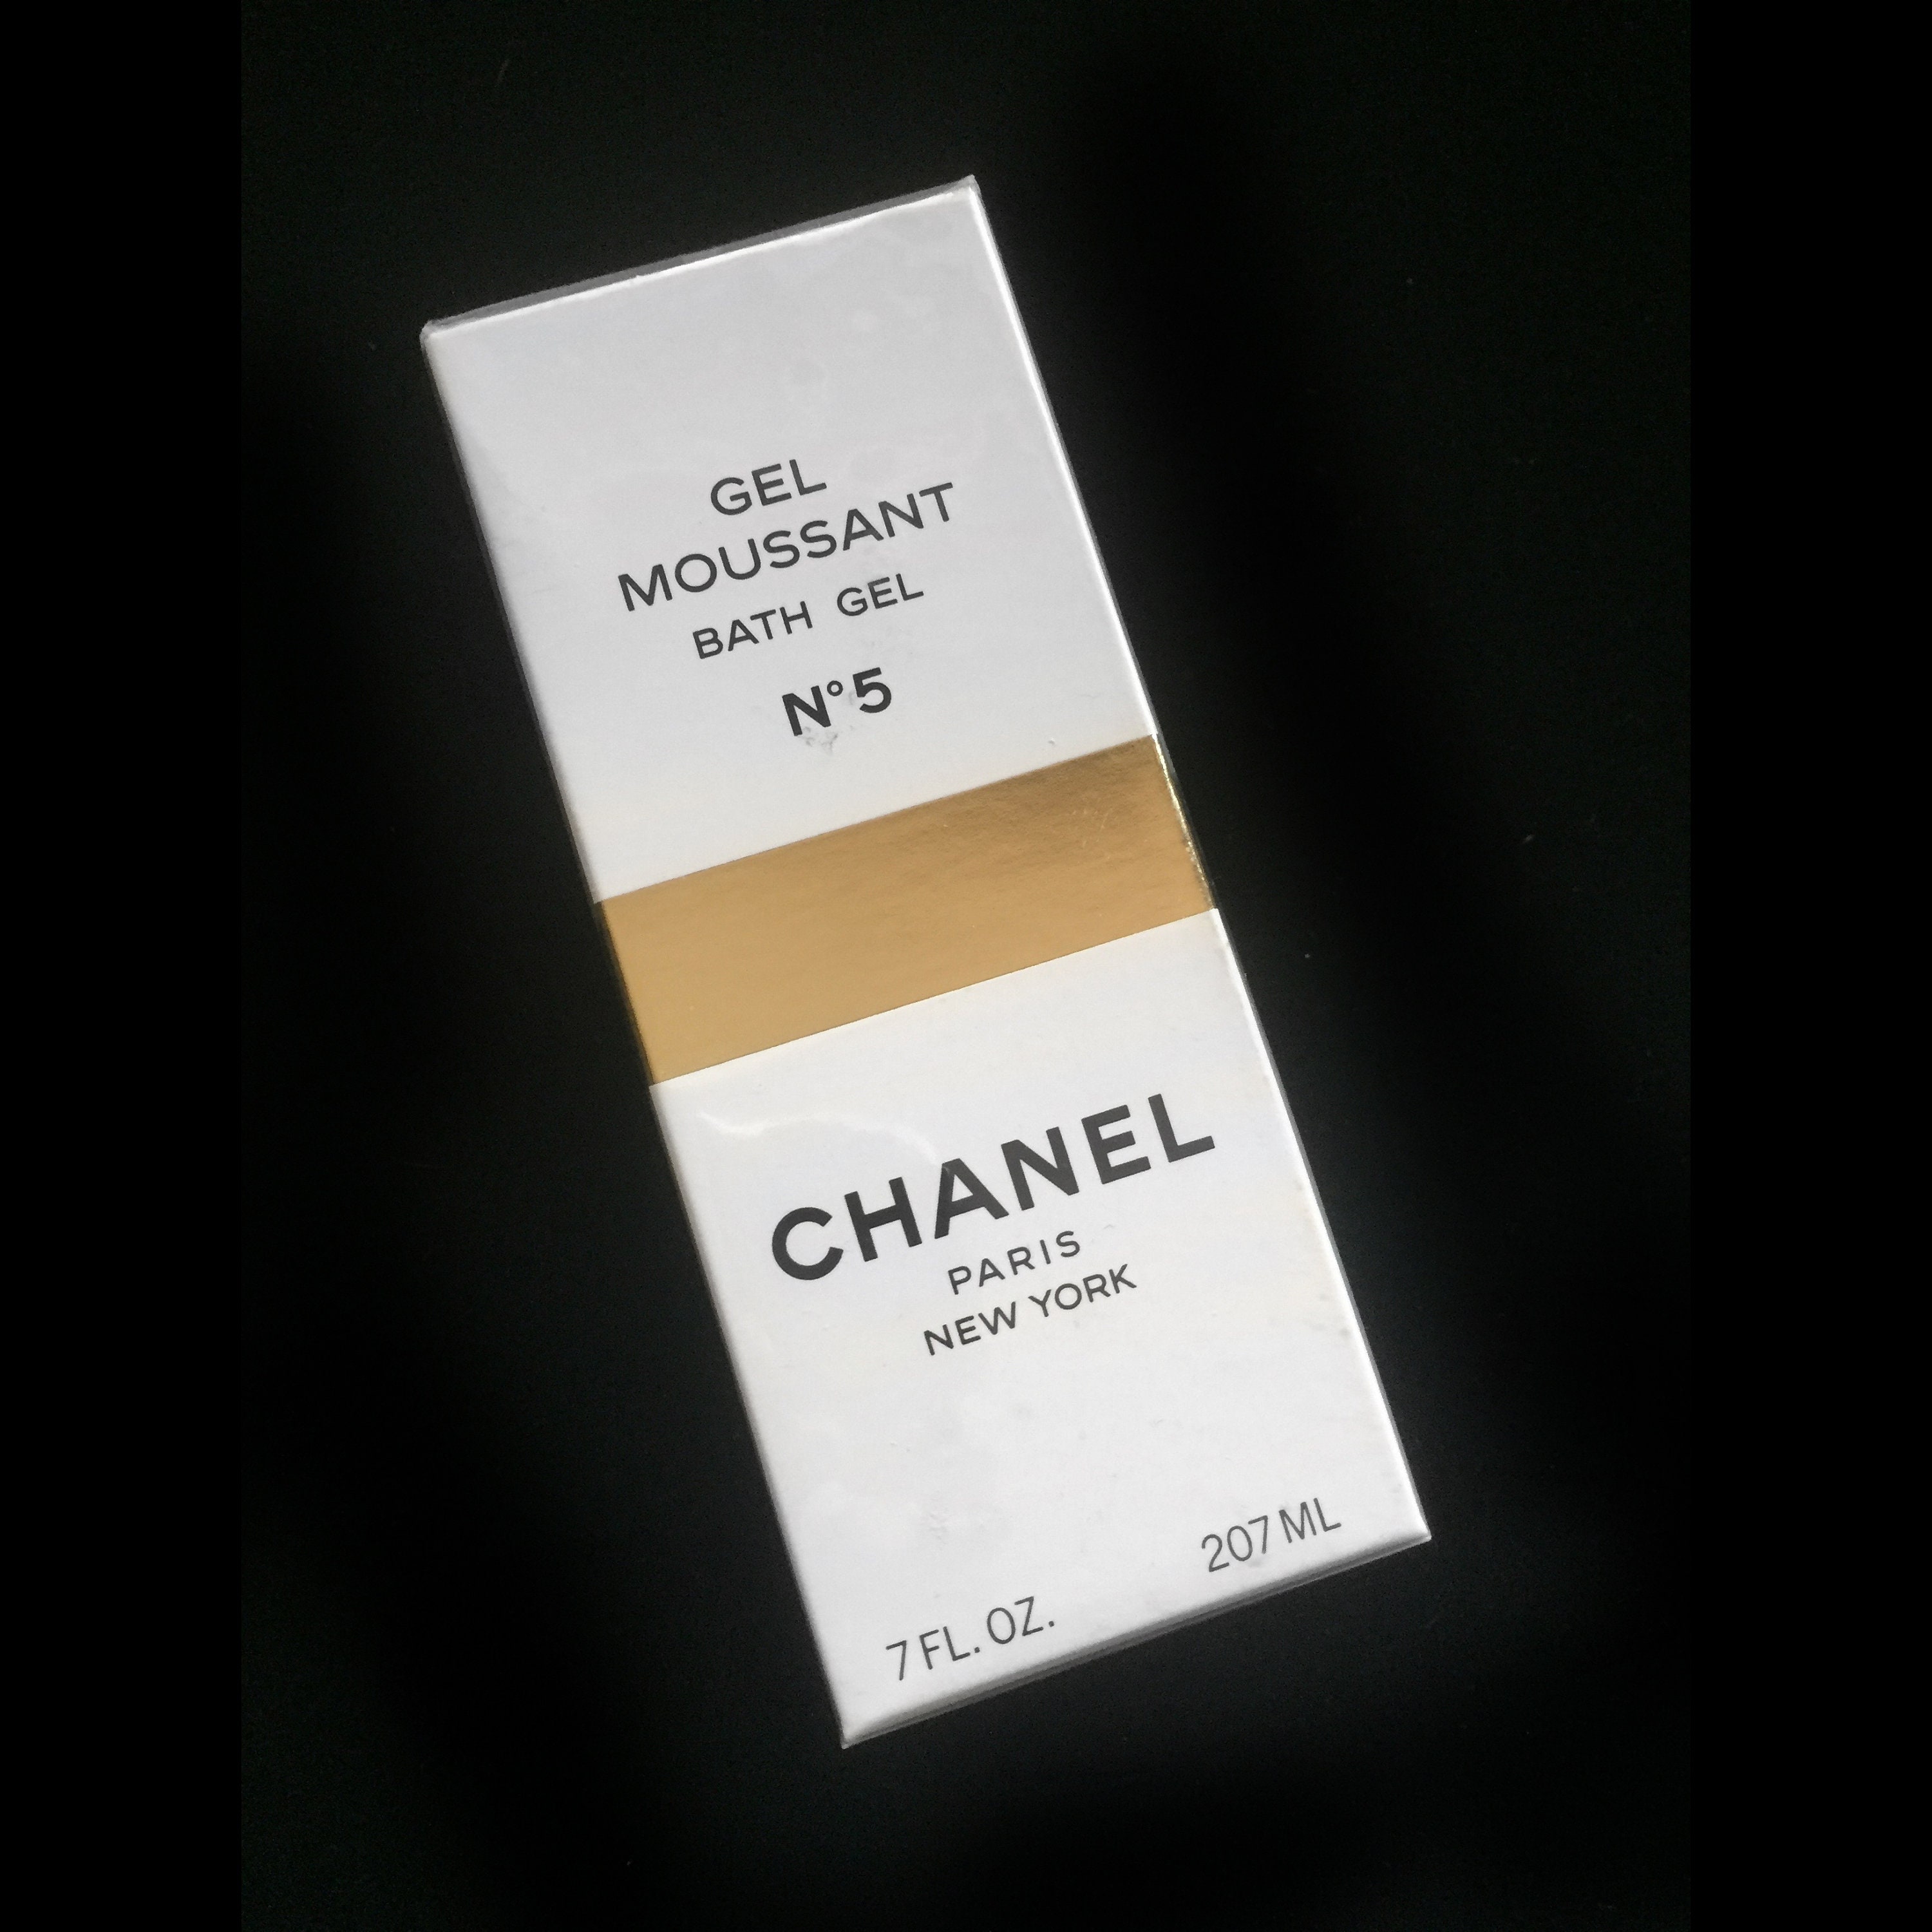 CHANEL COCO MADEMOISELLE Velvet Body Oil 200ml BRAND NEW BOXED